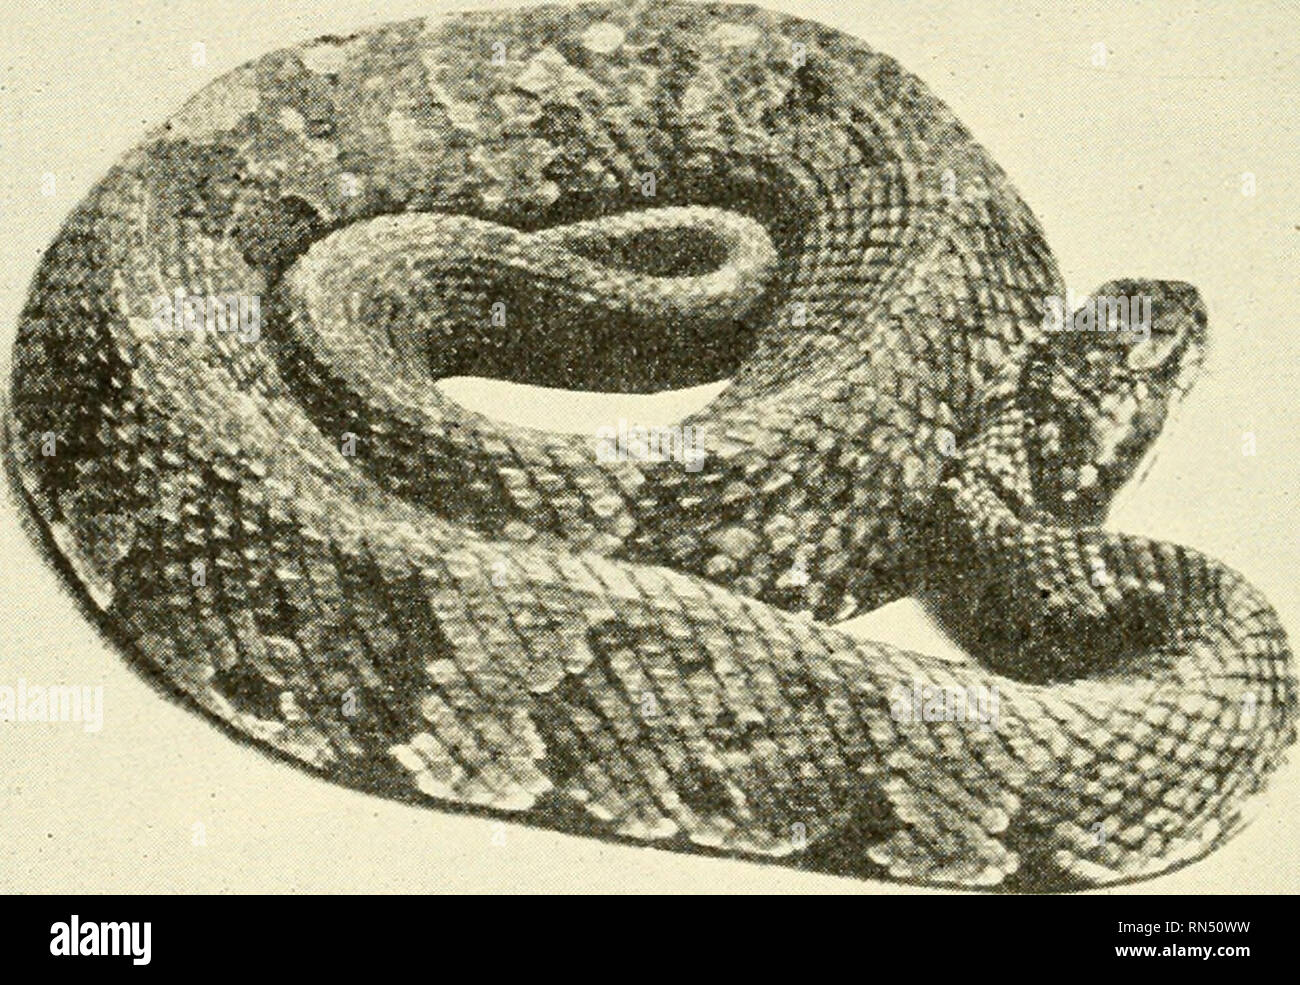 . Biologie der Tiere. Zoologie; Biologie. 396 METAZOAN STÄMME Schlangen sind reichlich in den Tropen als anderswo und sind häufig abwesend von Inseln, obwohl auf den angrenzenden Kontinenten gefunden. Einige Schlangen Hve meist in und über frisches Wasser; einige leben in Salzwasser; andere unterirdische sind, Graben im Boden; während noch sind andere Experten Baumbewohner. Die größte der Schlangen sind ein Python in Birma, die eine Länge von über 30 Metern erstreckt, und einer Anaconda der Region des Amazonas in Südamerika, die 40 Fuß in der Länge. 419. Giftige Schlangen.- Die seeschlangen sind sehr Poi Stockfoto